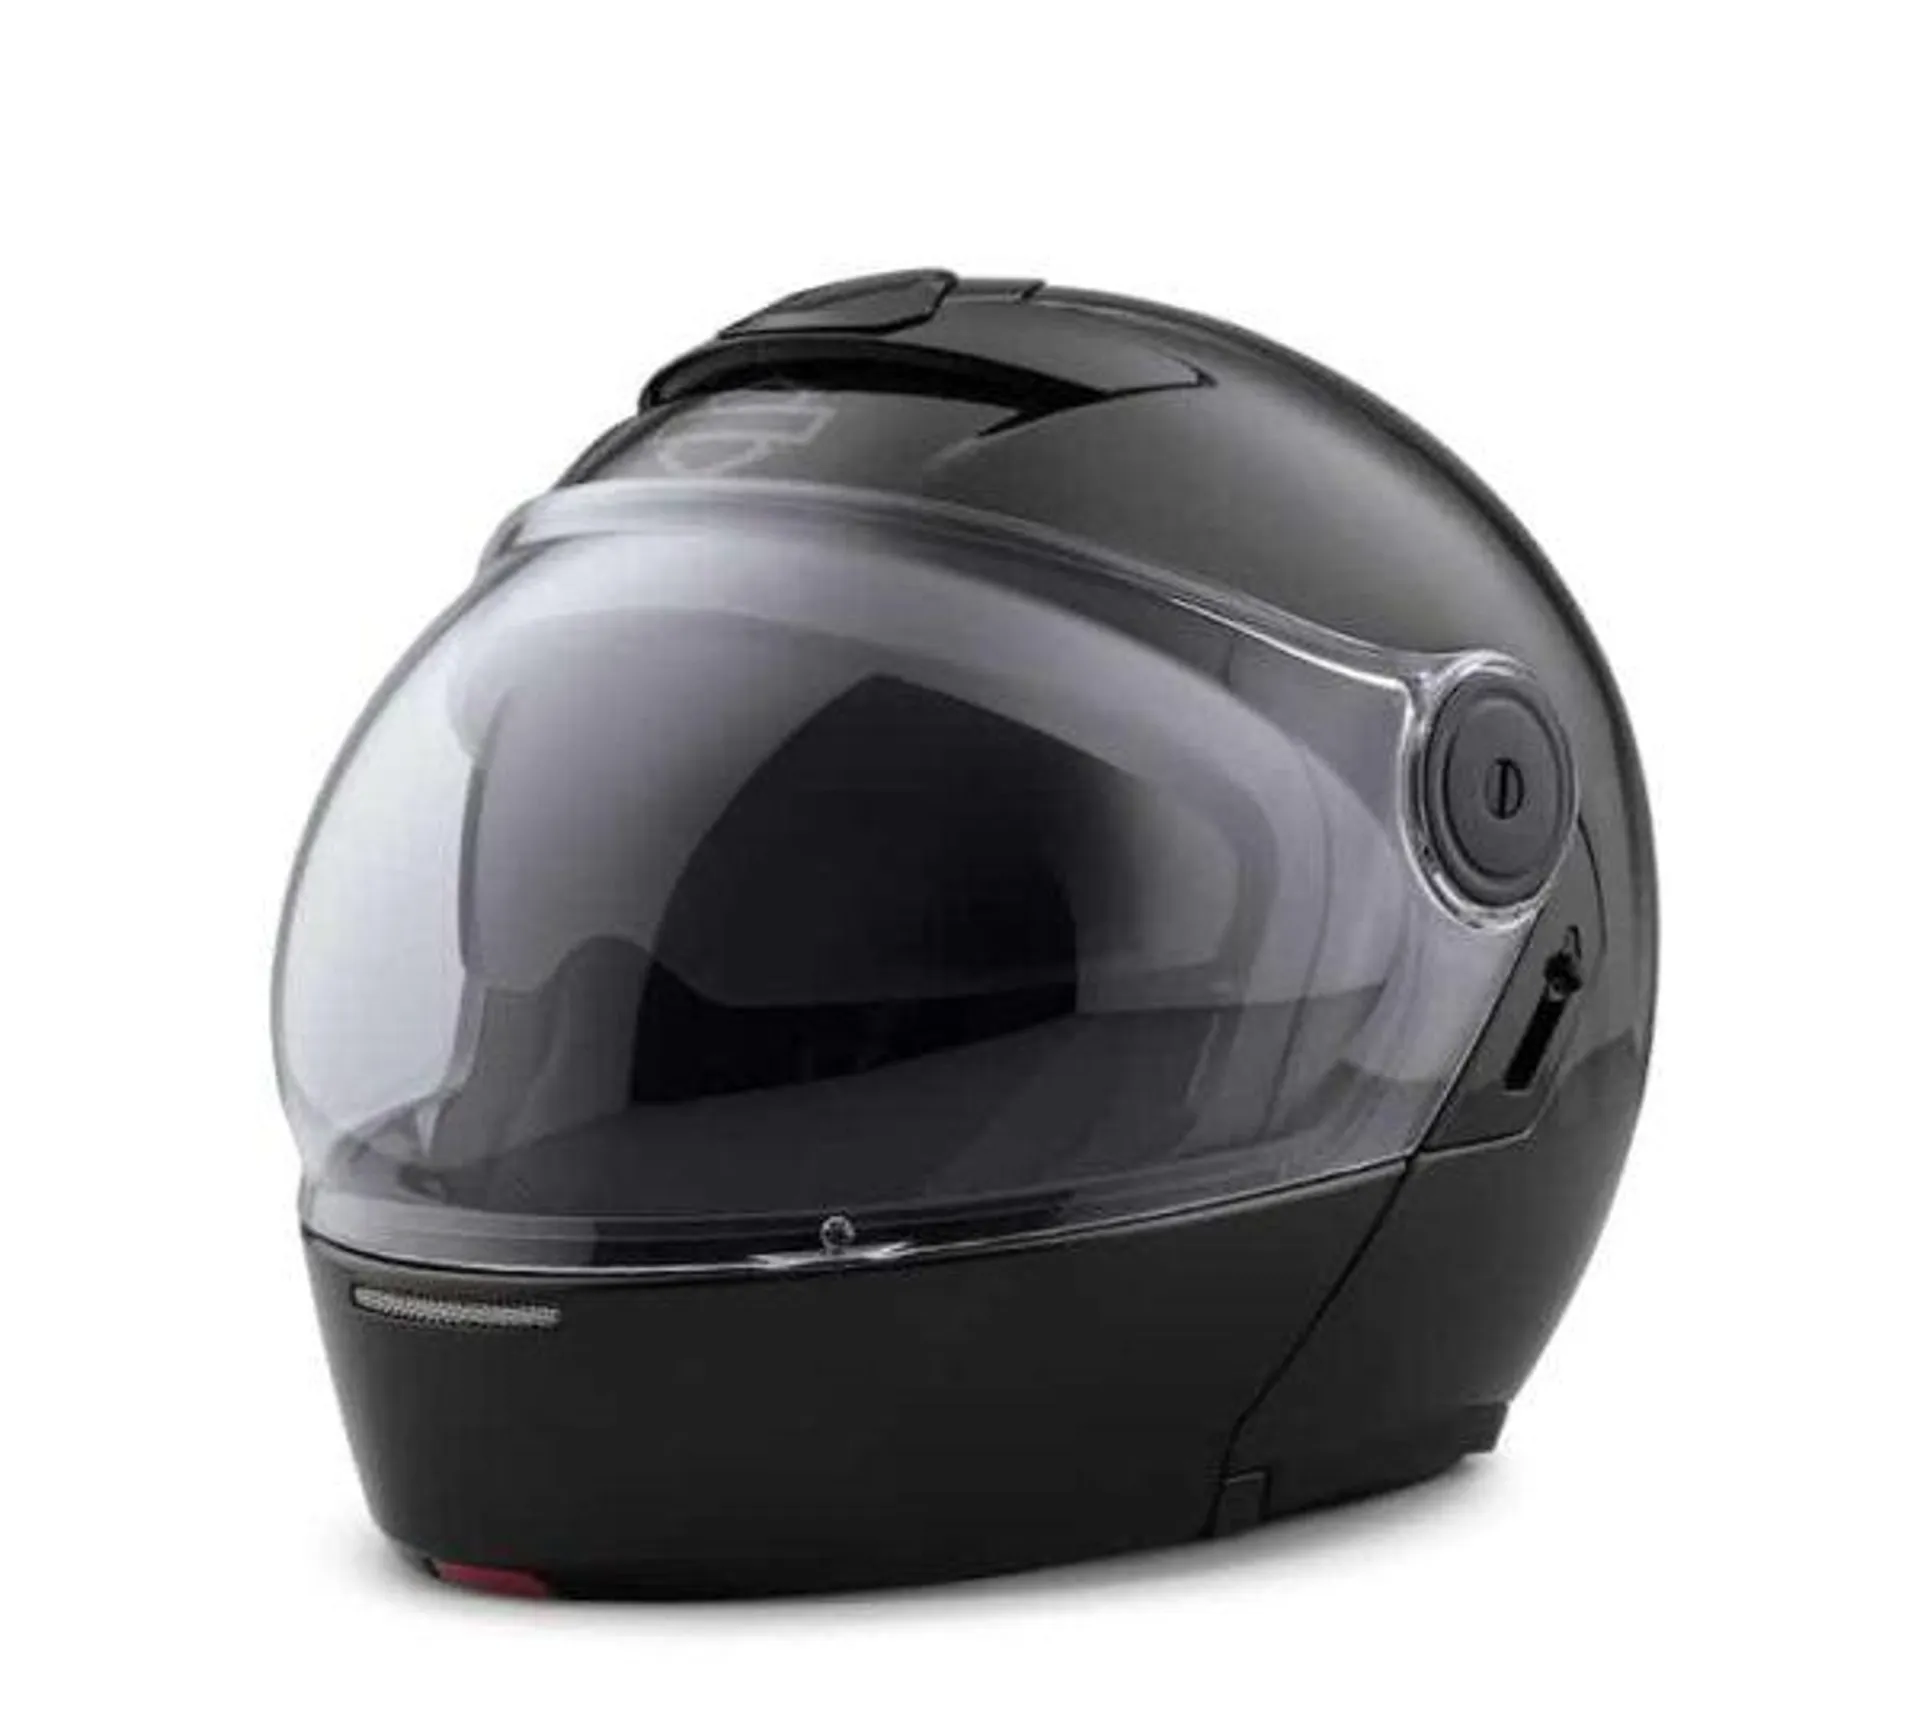 Myer J08 Modular Helmet